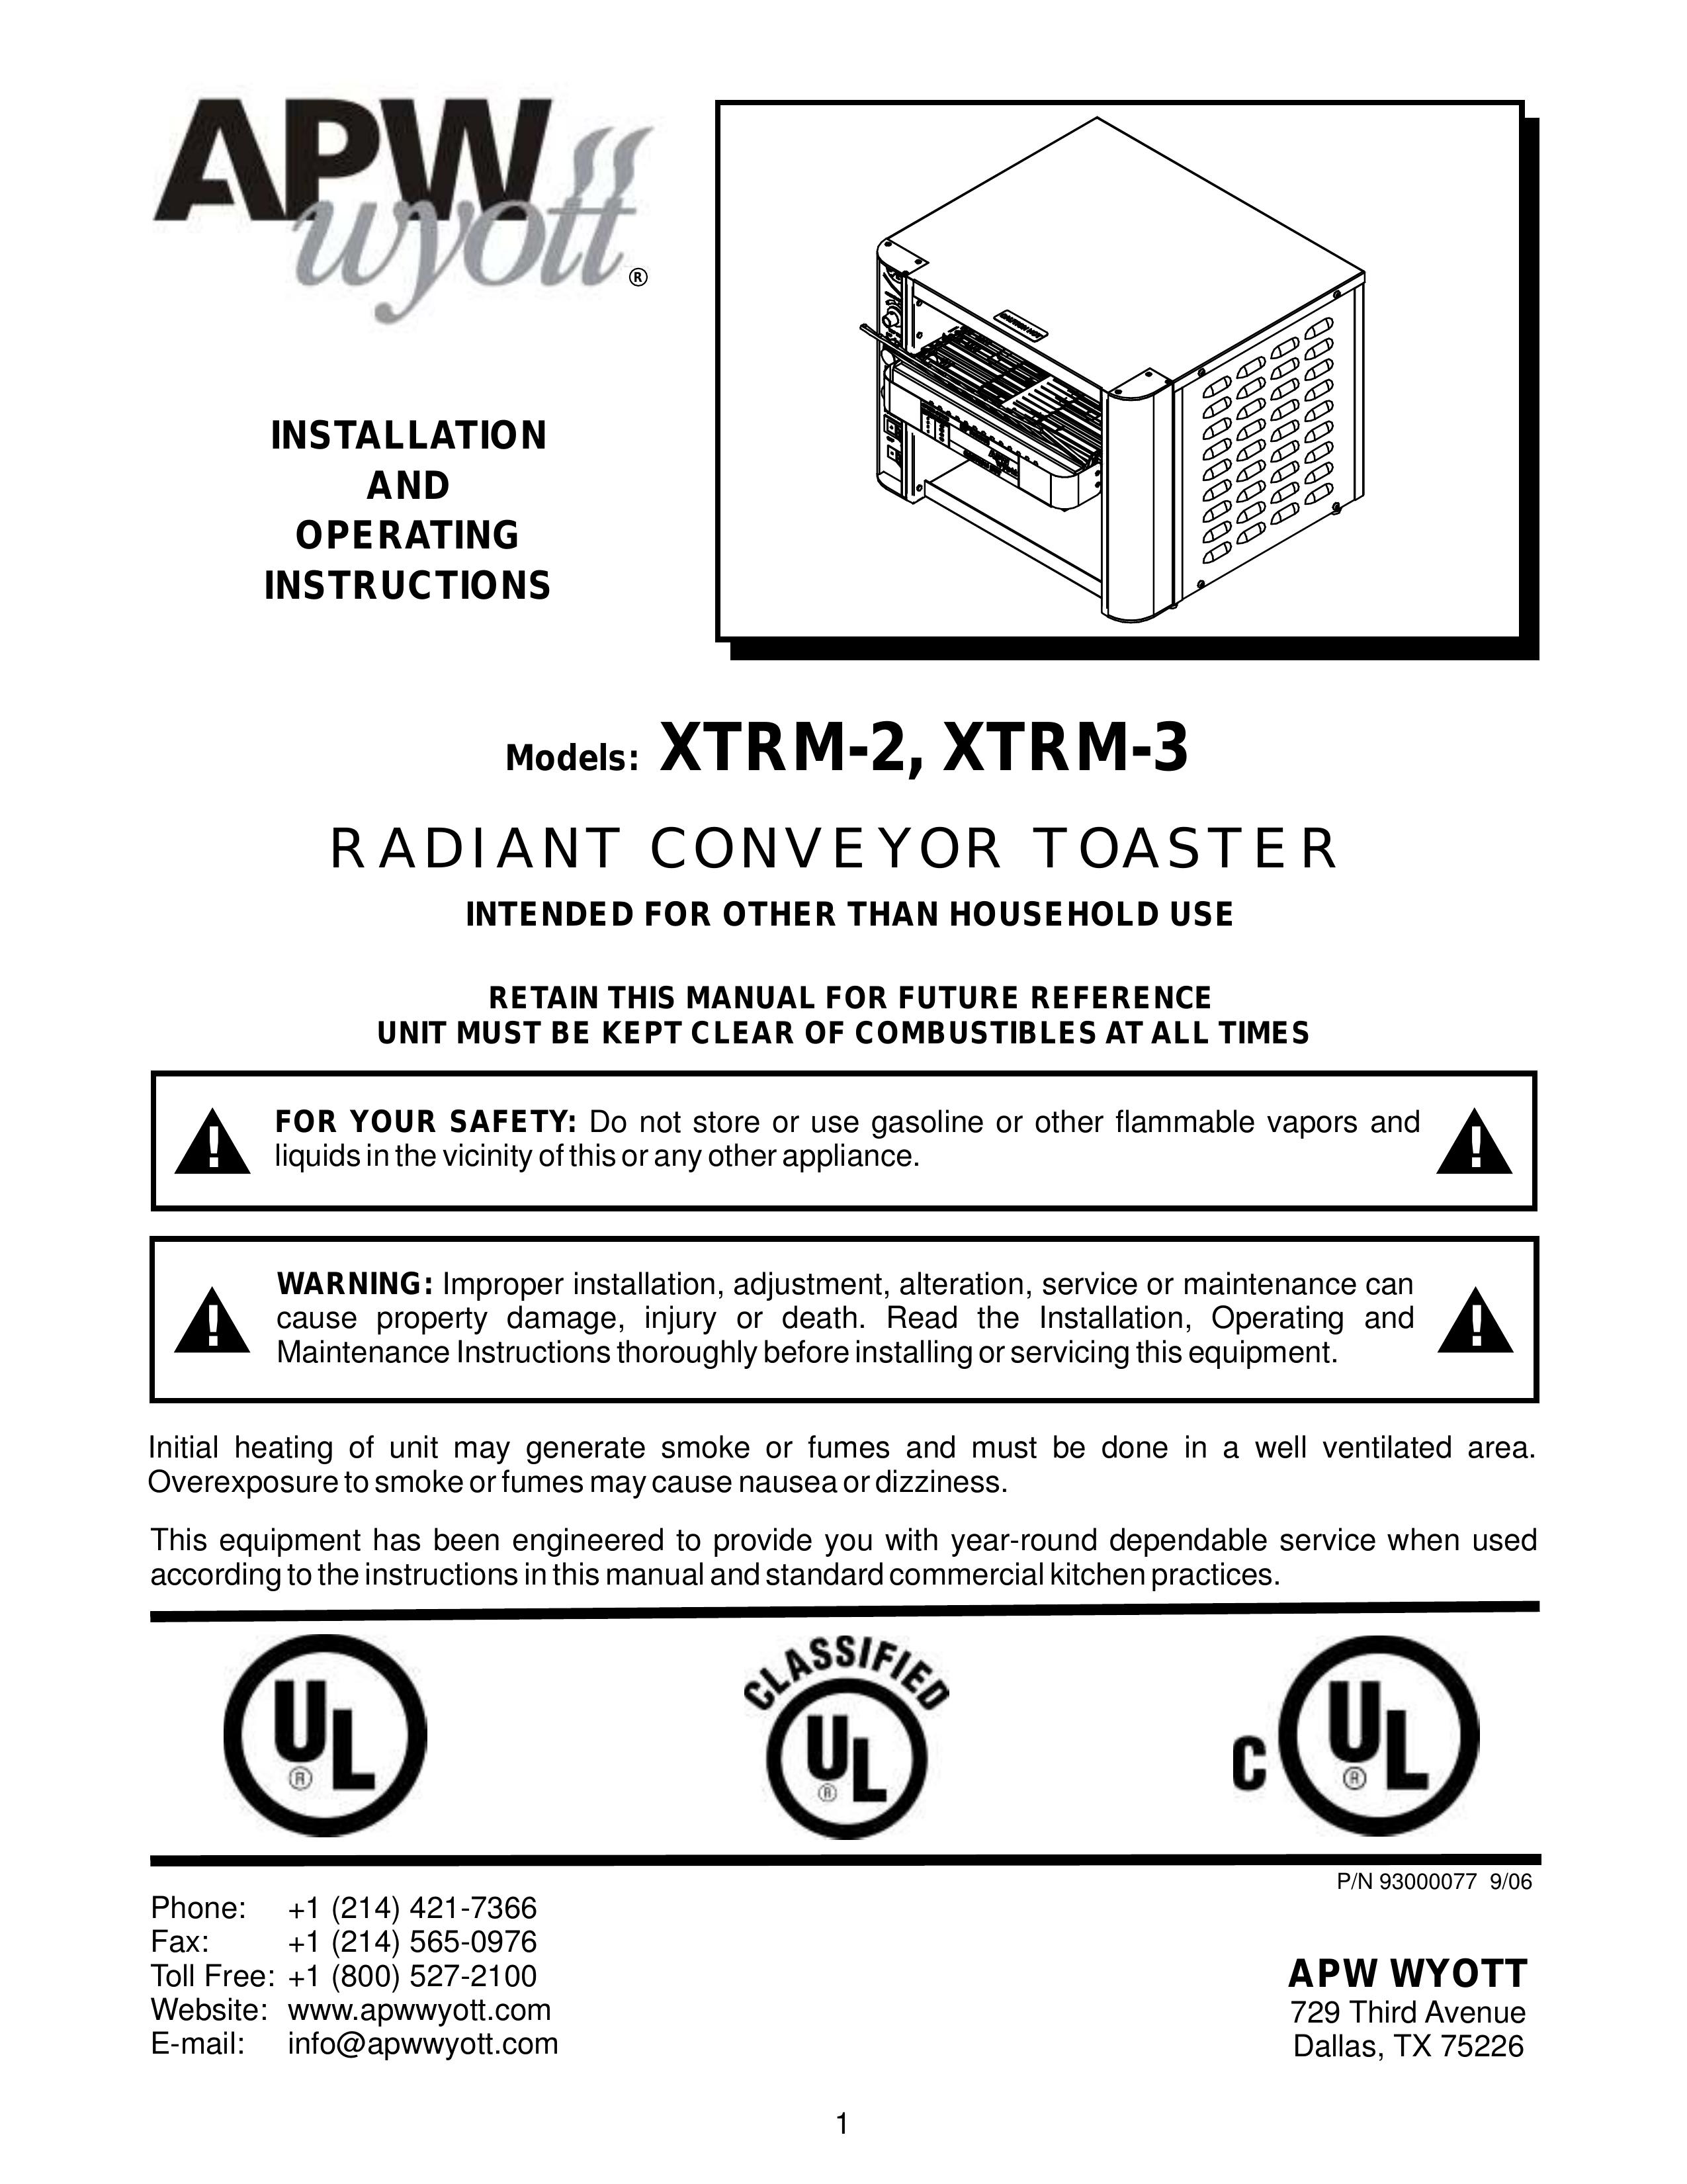 APW Wyott XTRM-2 Toaster User Manual